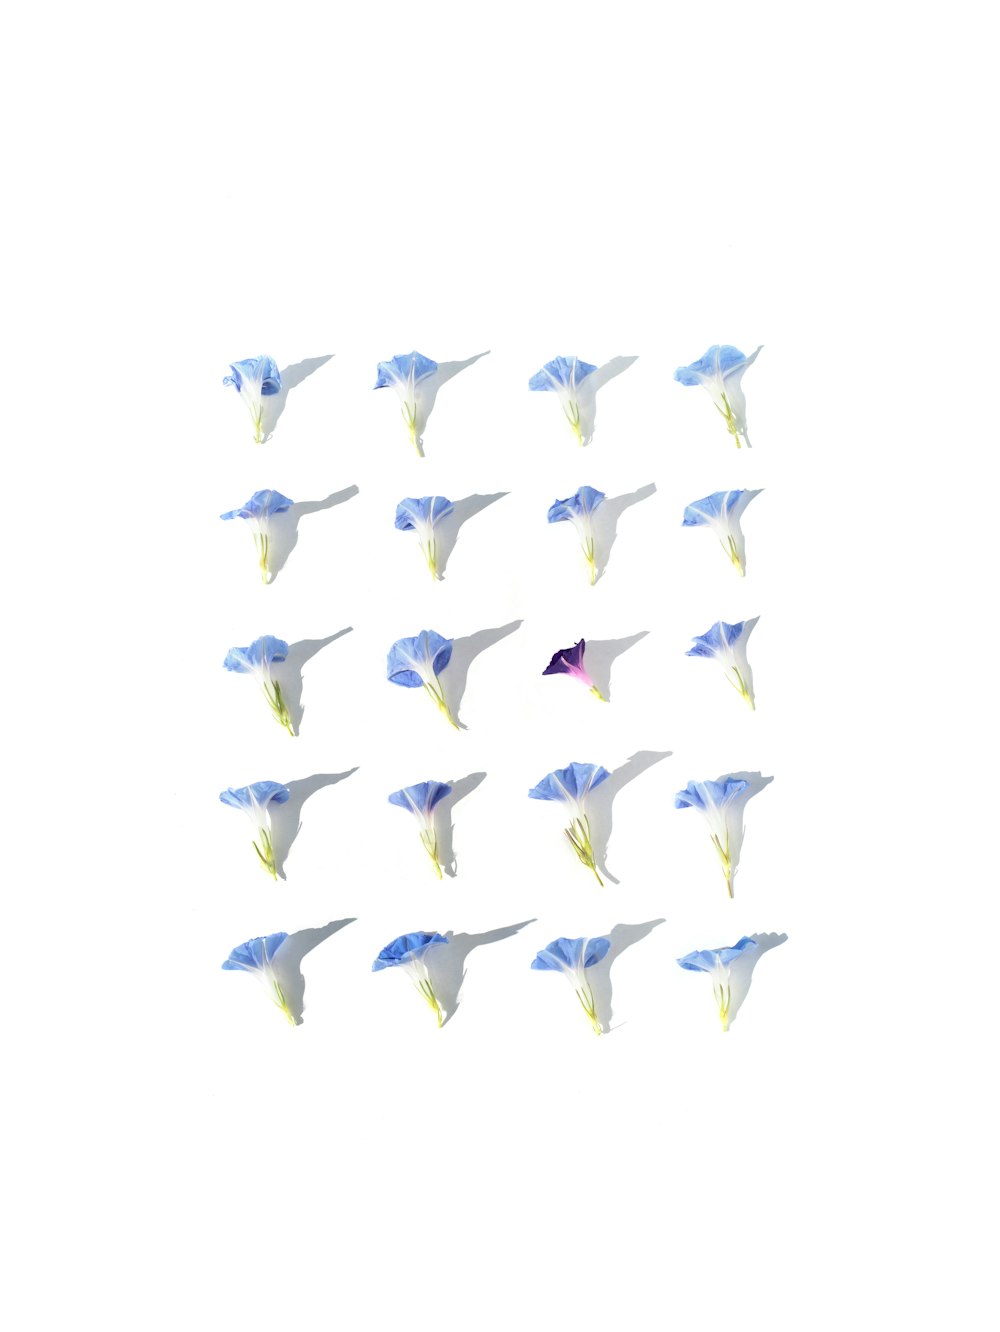 Un gruppo di aquiloni che volano nel cielo